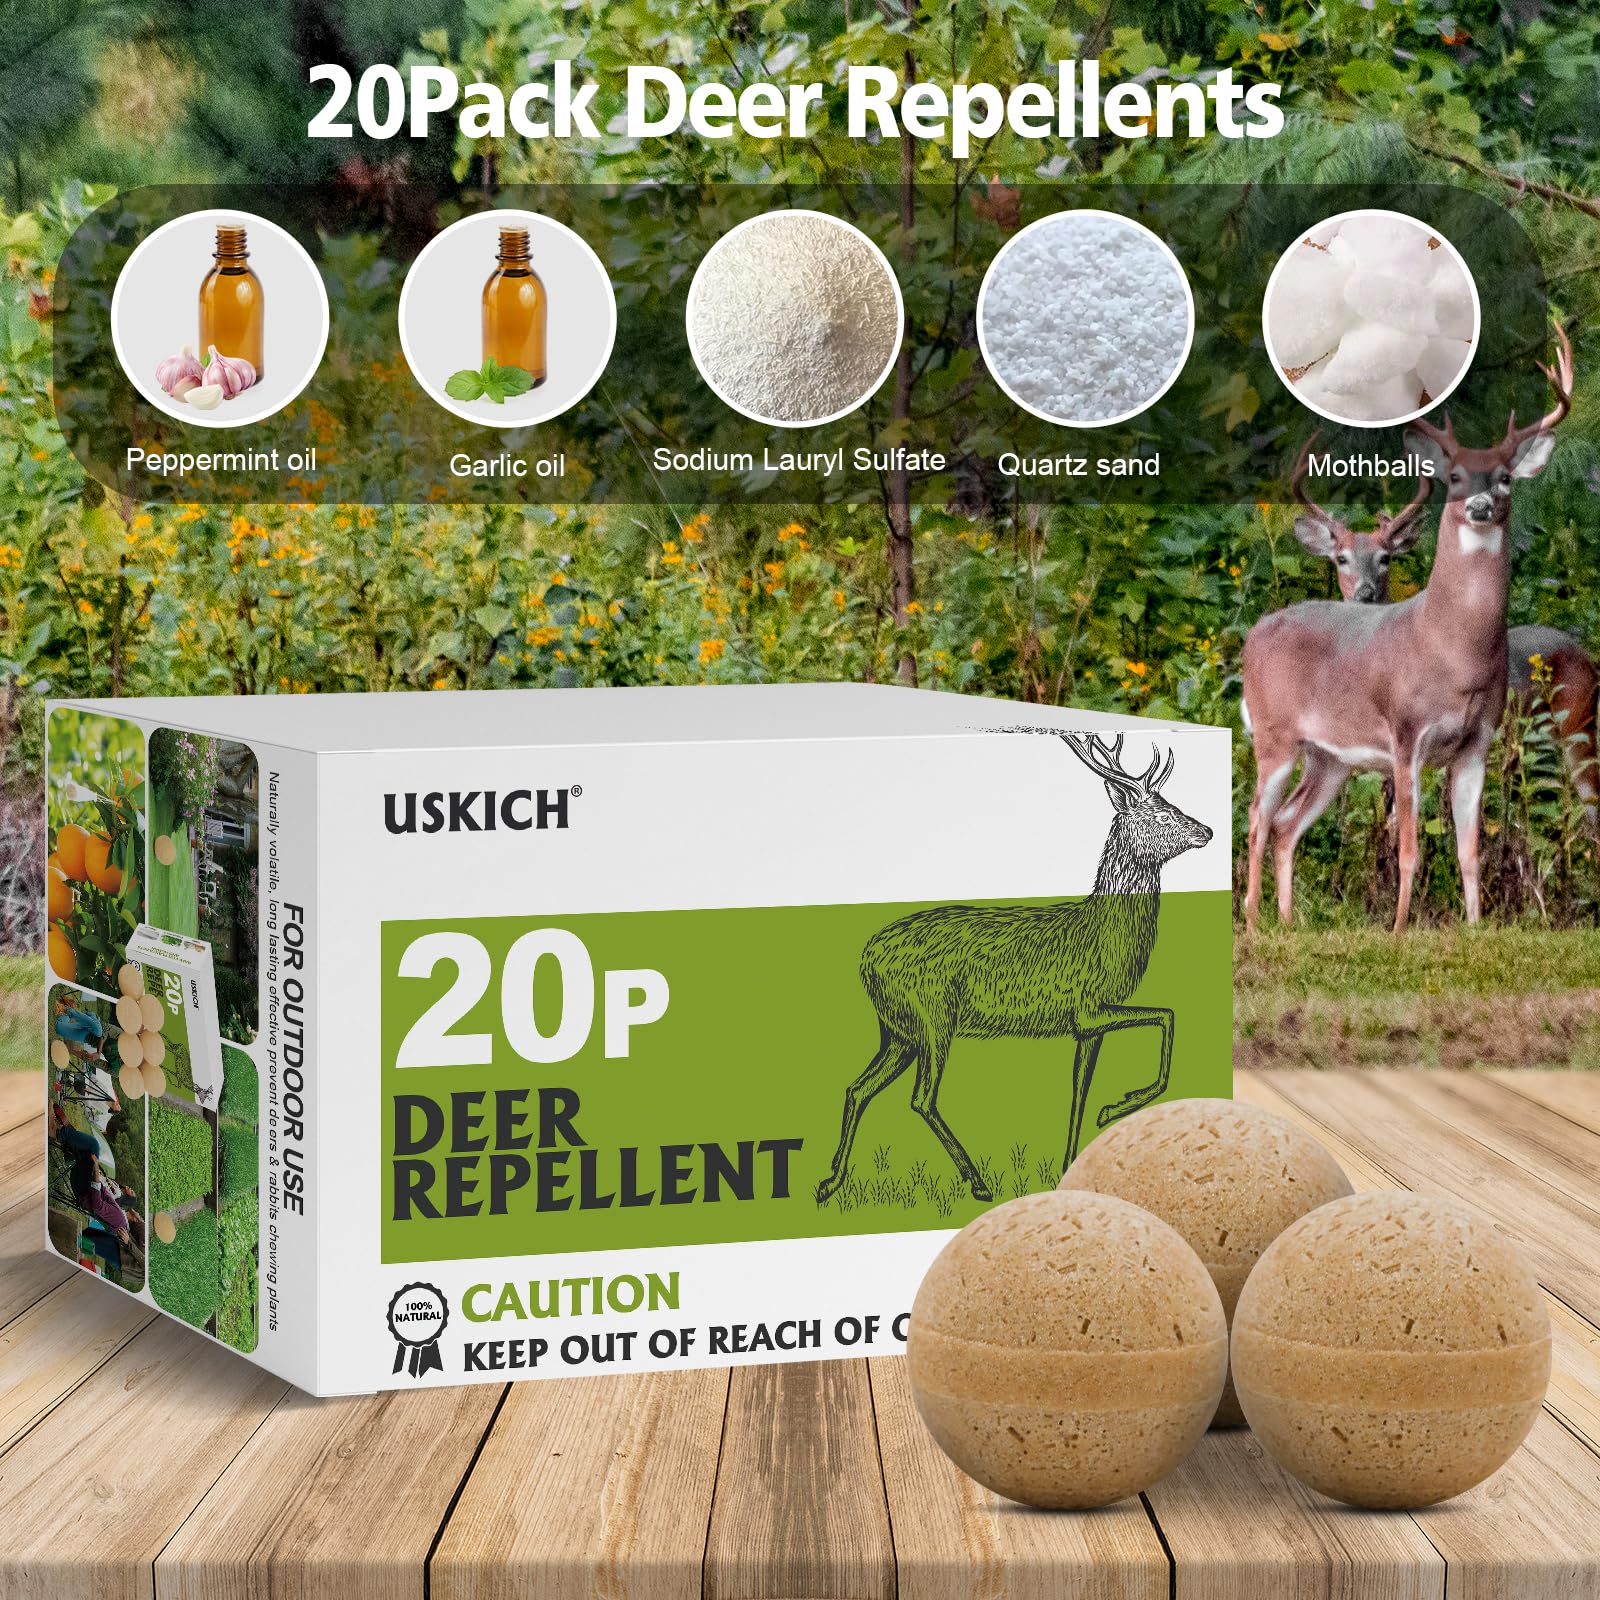 20 Pack Deer Repellent, Rabbit Repellent, Deer Deterrent, Powerful Deer Repellent Outdoor for Plants, Rabbit Repellant for Garden, Deer Repellent for Outdoor Tree Yard, Safe for Deer and Plants